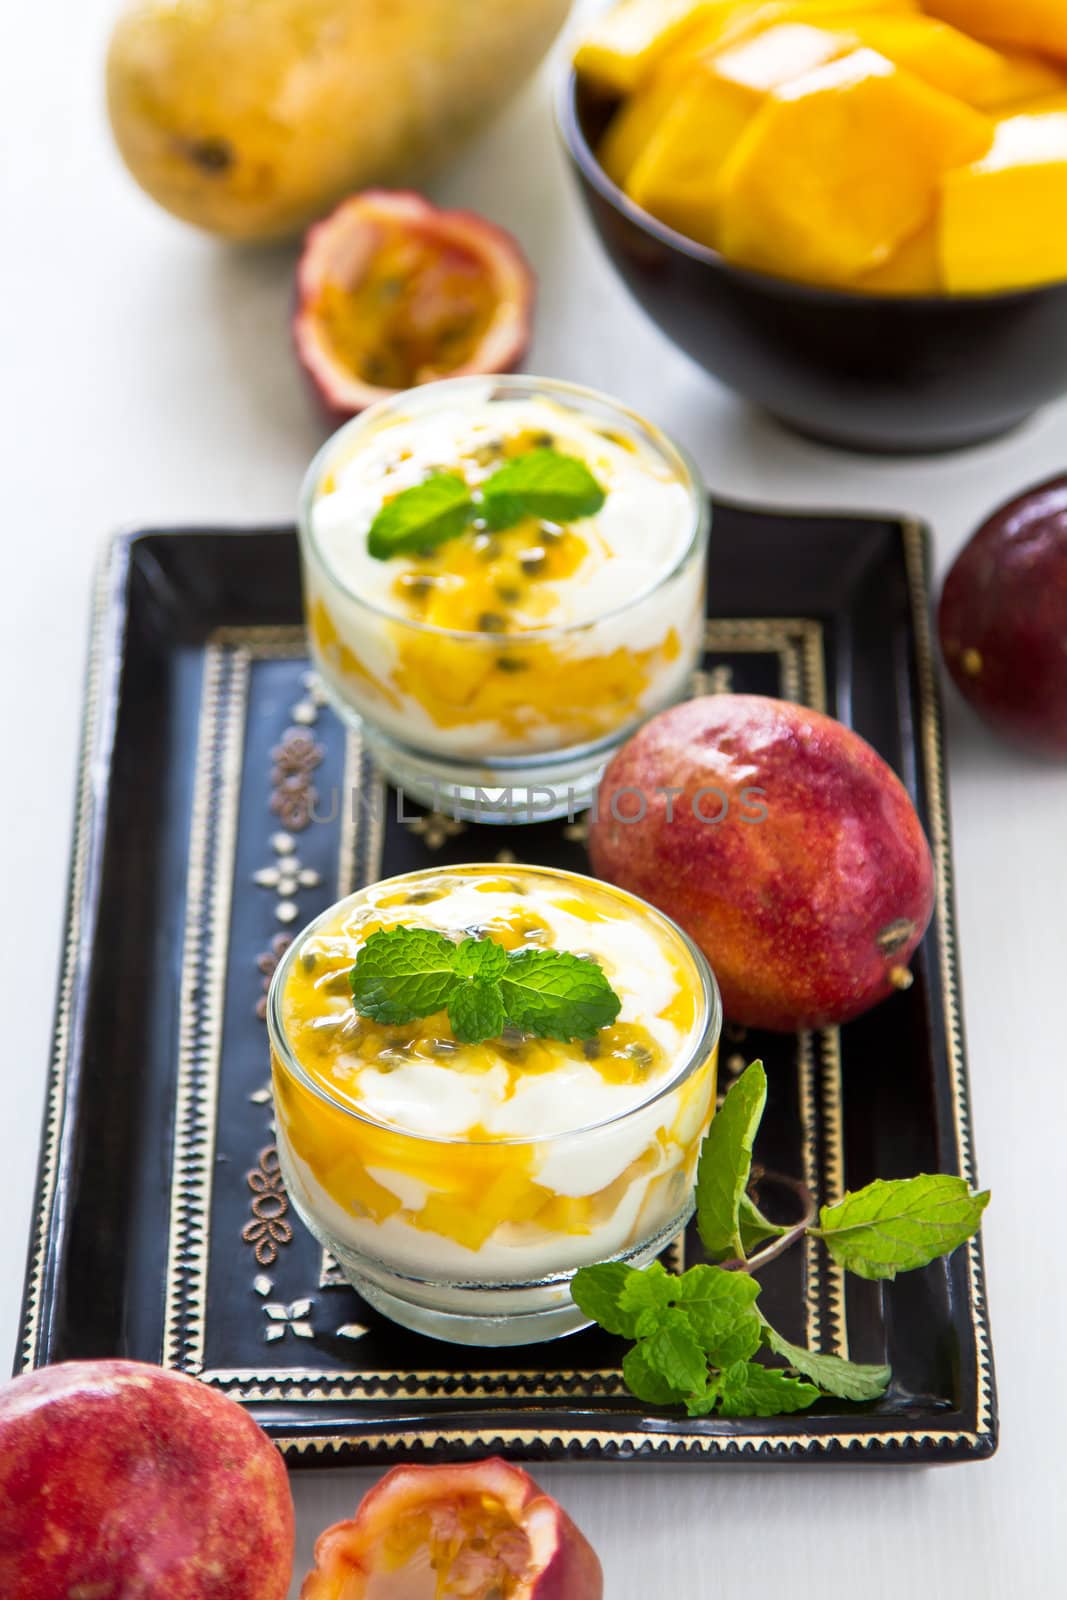 Fresh Passion fruit and Mango with yogurt